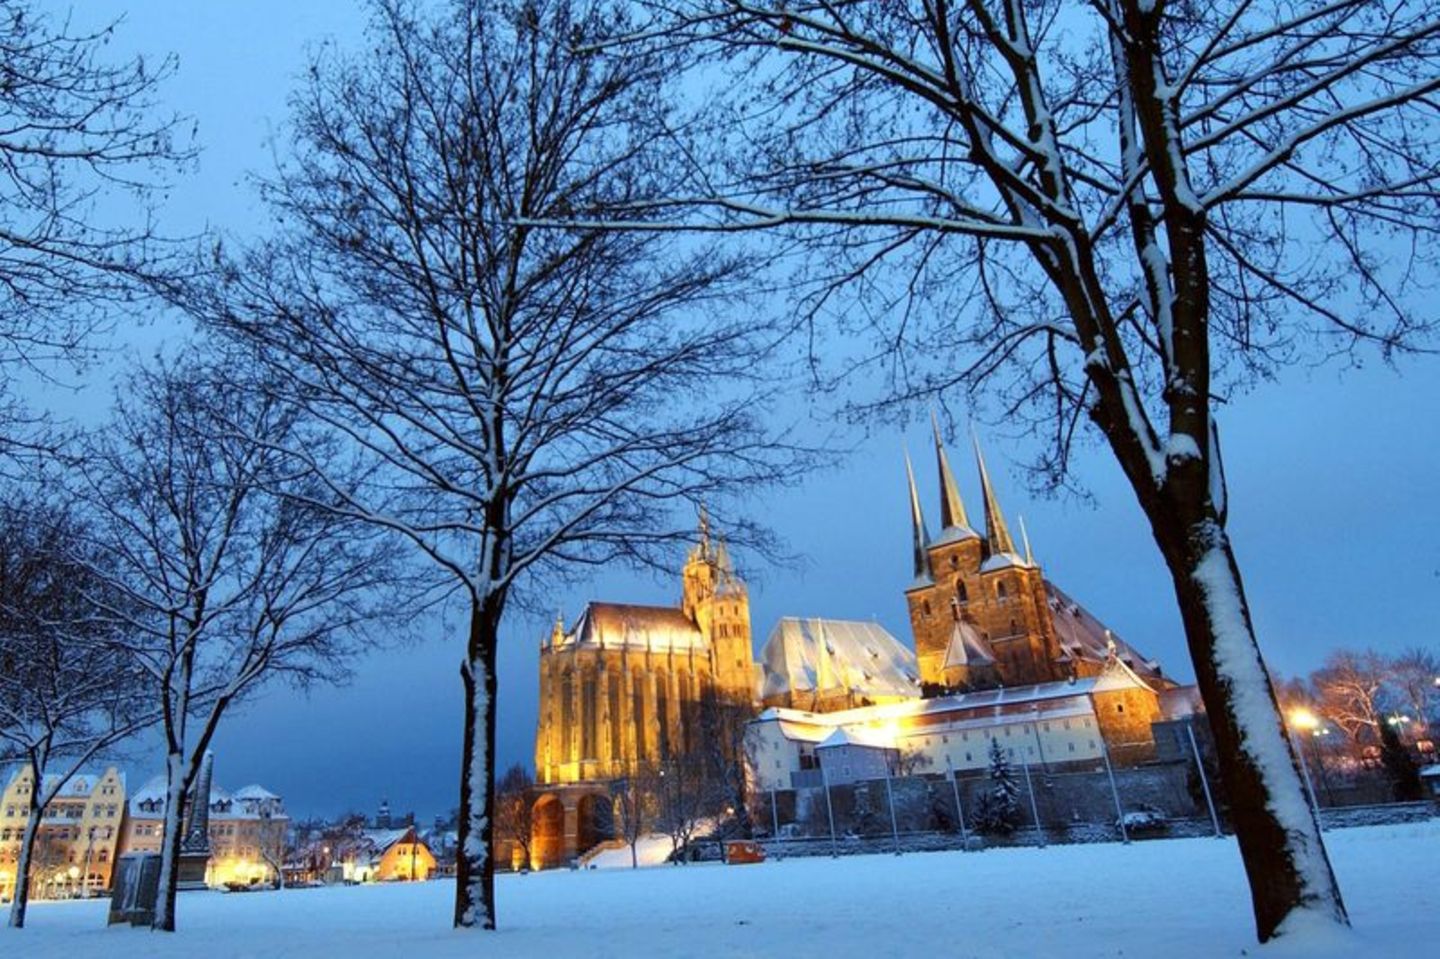 Dom und Severikirche in Erfurt im Winter